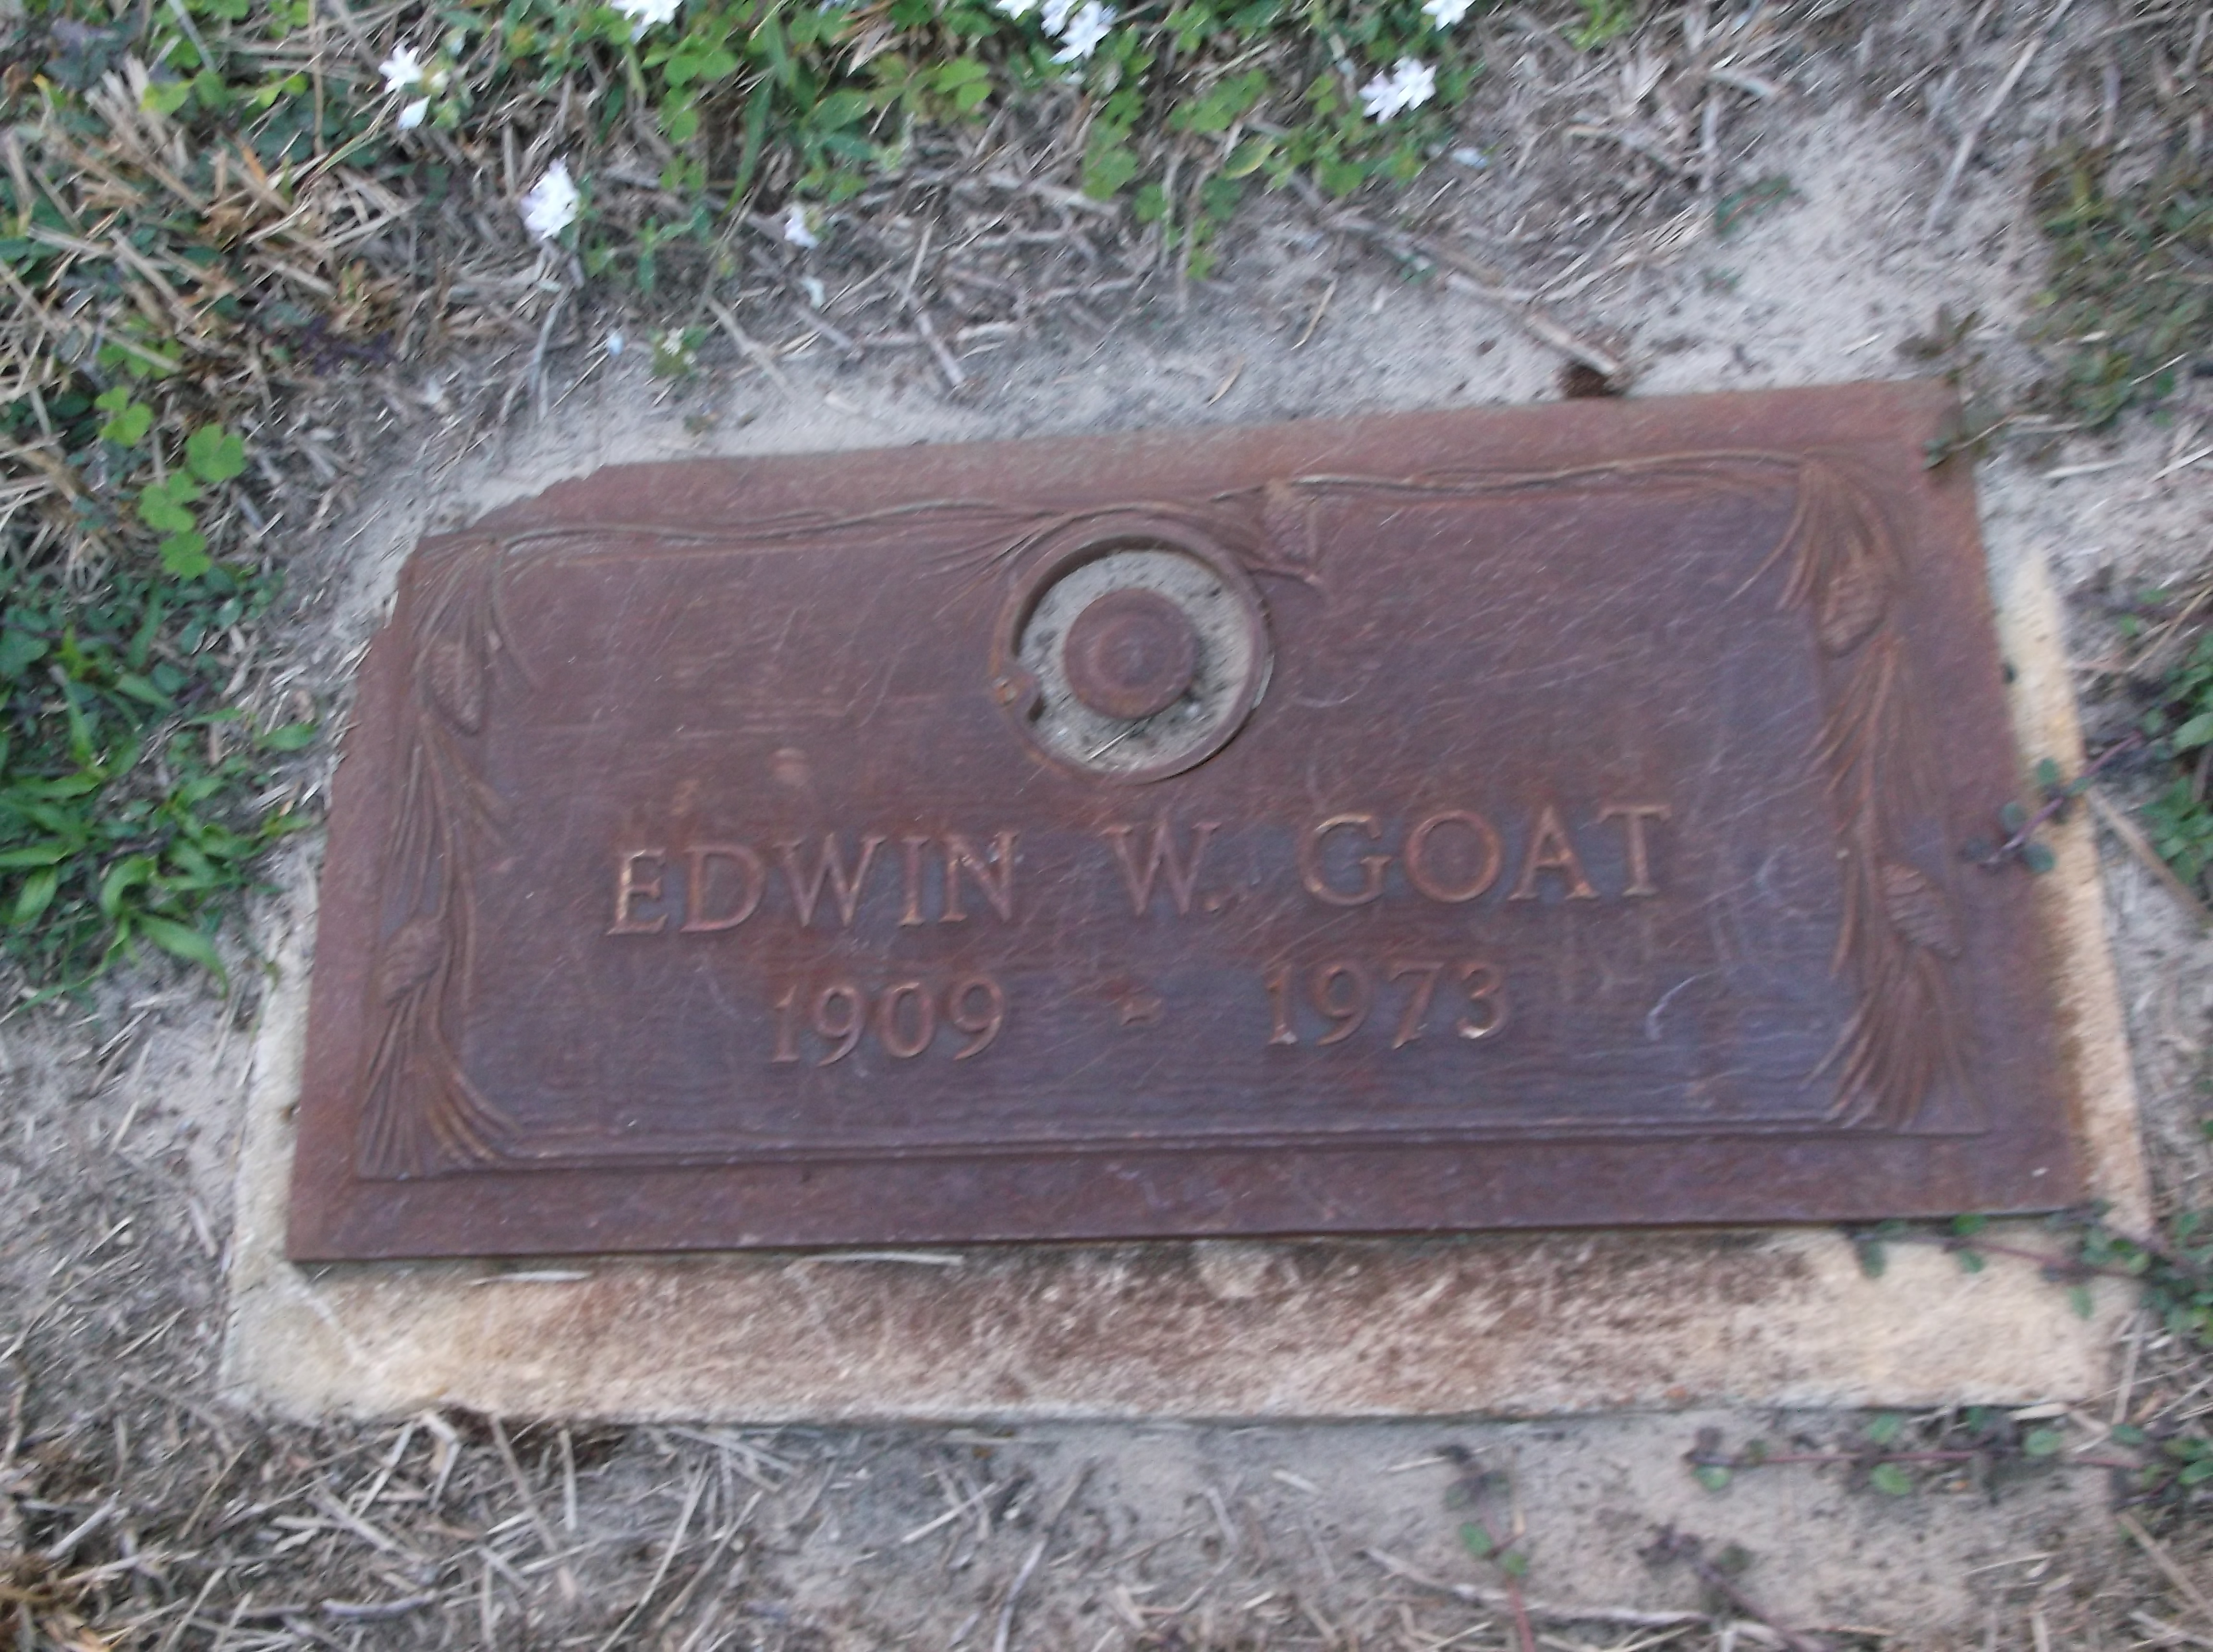 Edwin W Goat